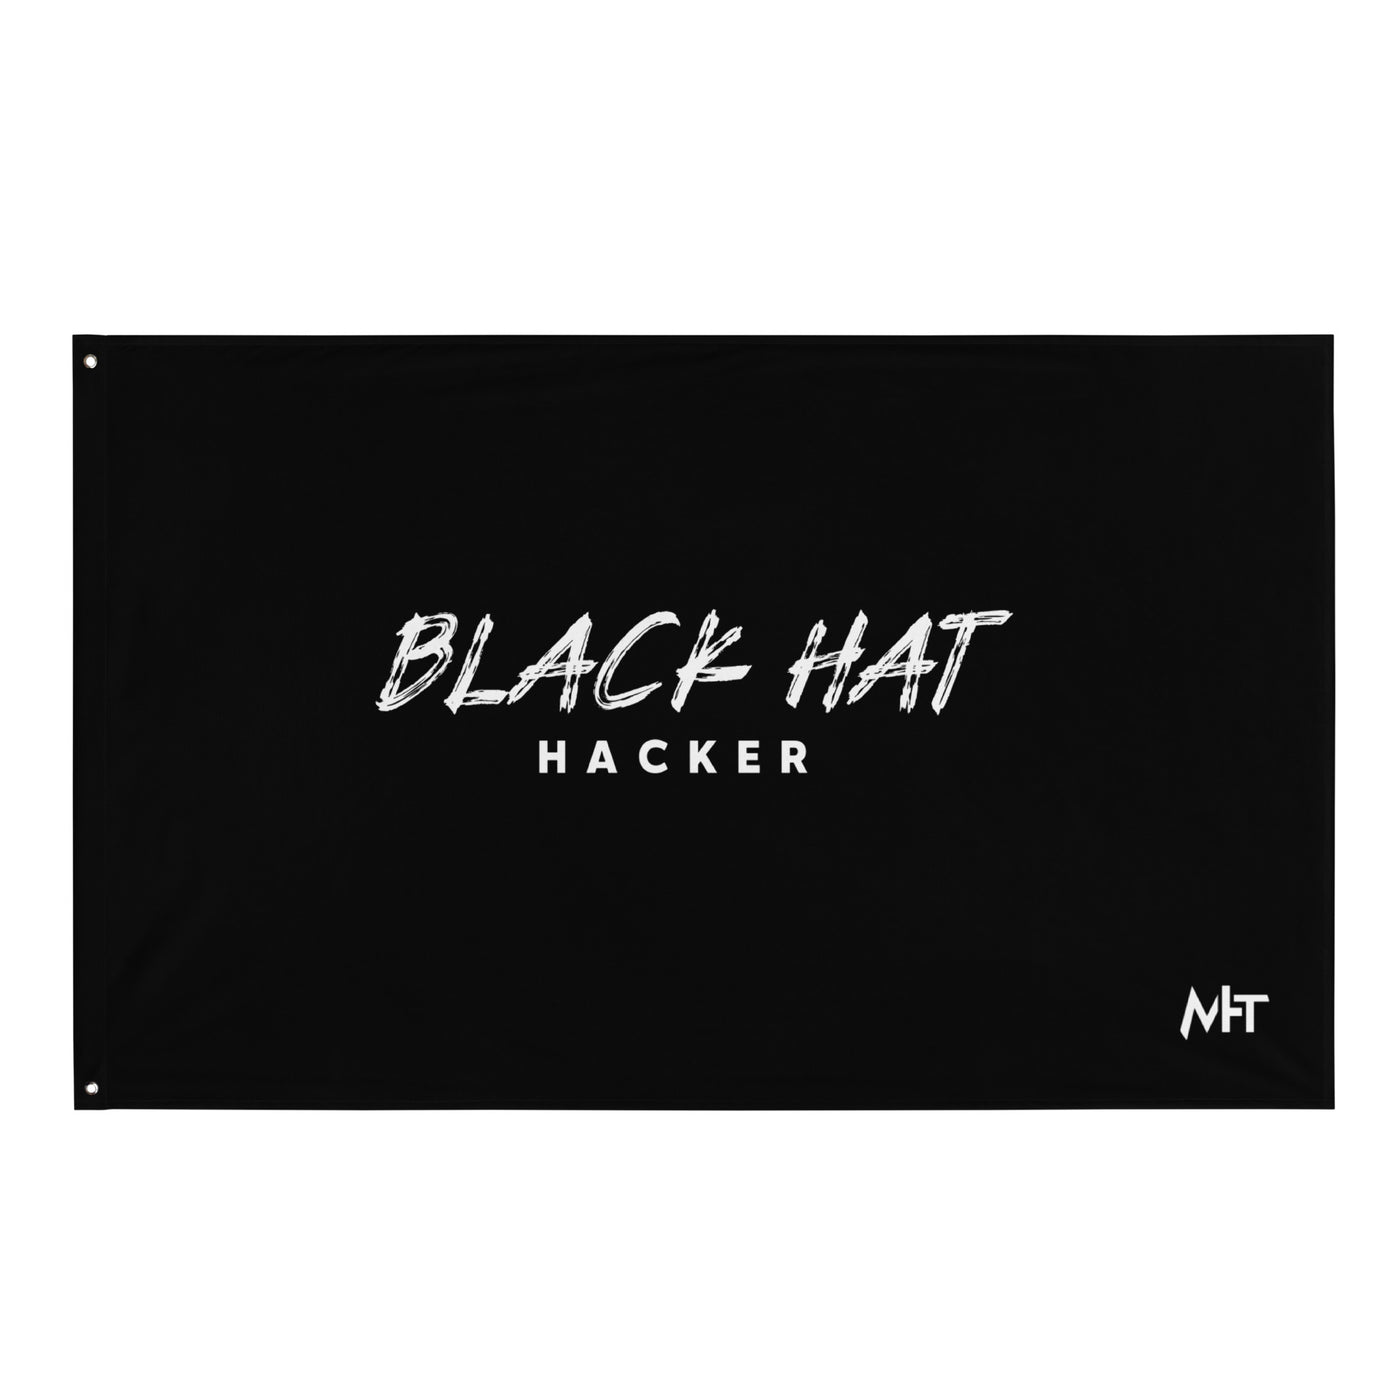 Black Hat Hacker V19 Flag